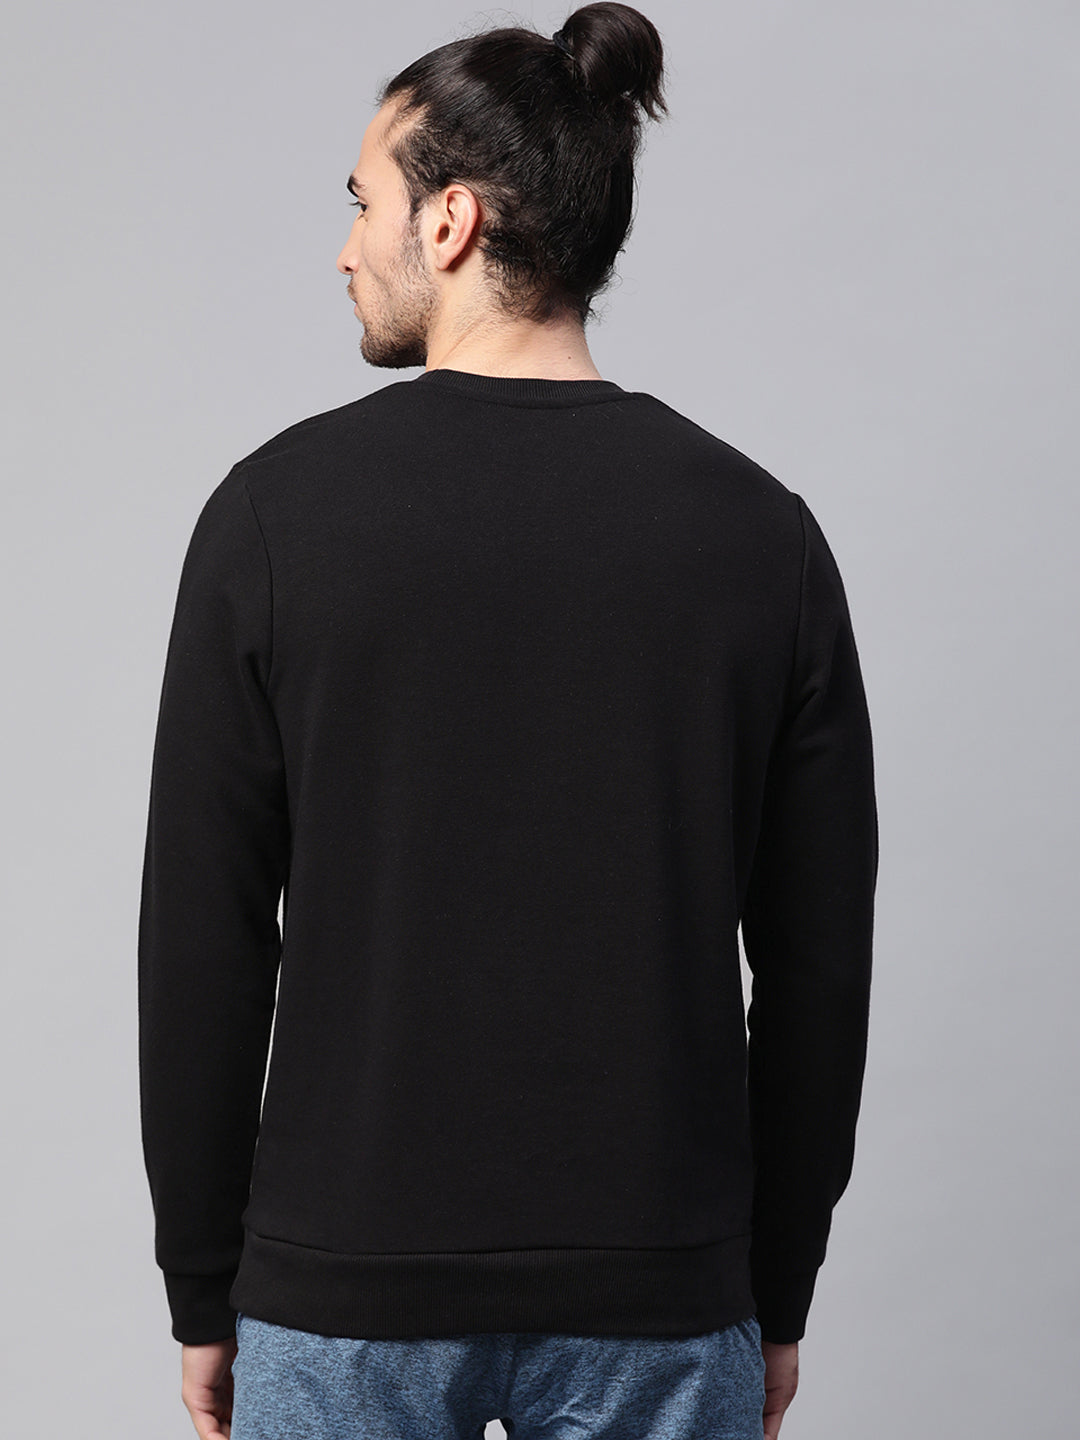 Alcis Men Solid Black Sweatshirts